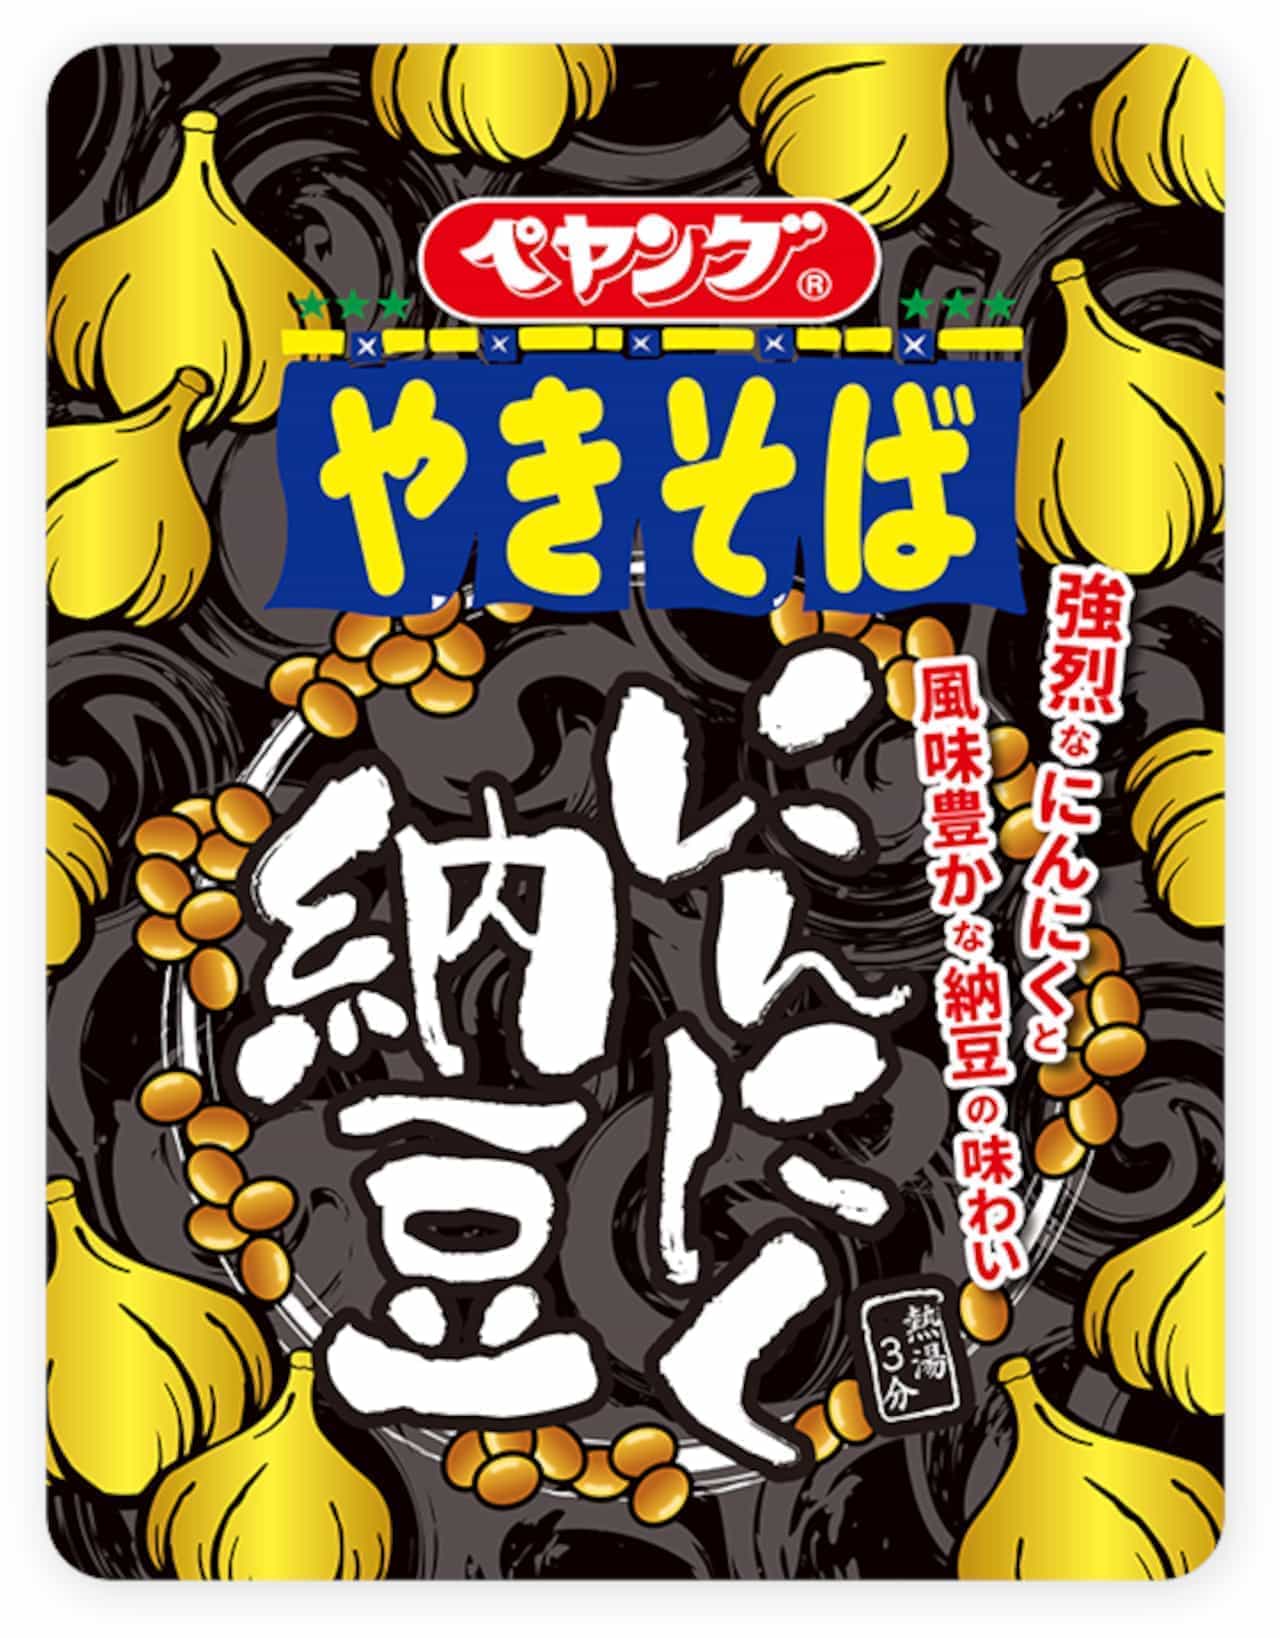 Maruka Foods "Peyoung Garlic Natto Yakisoba"